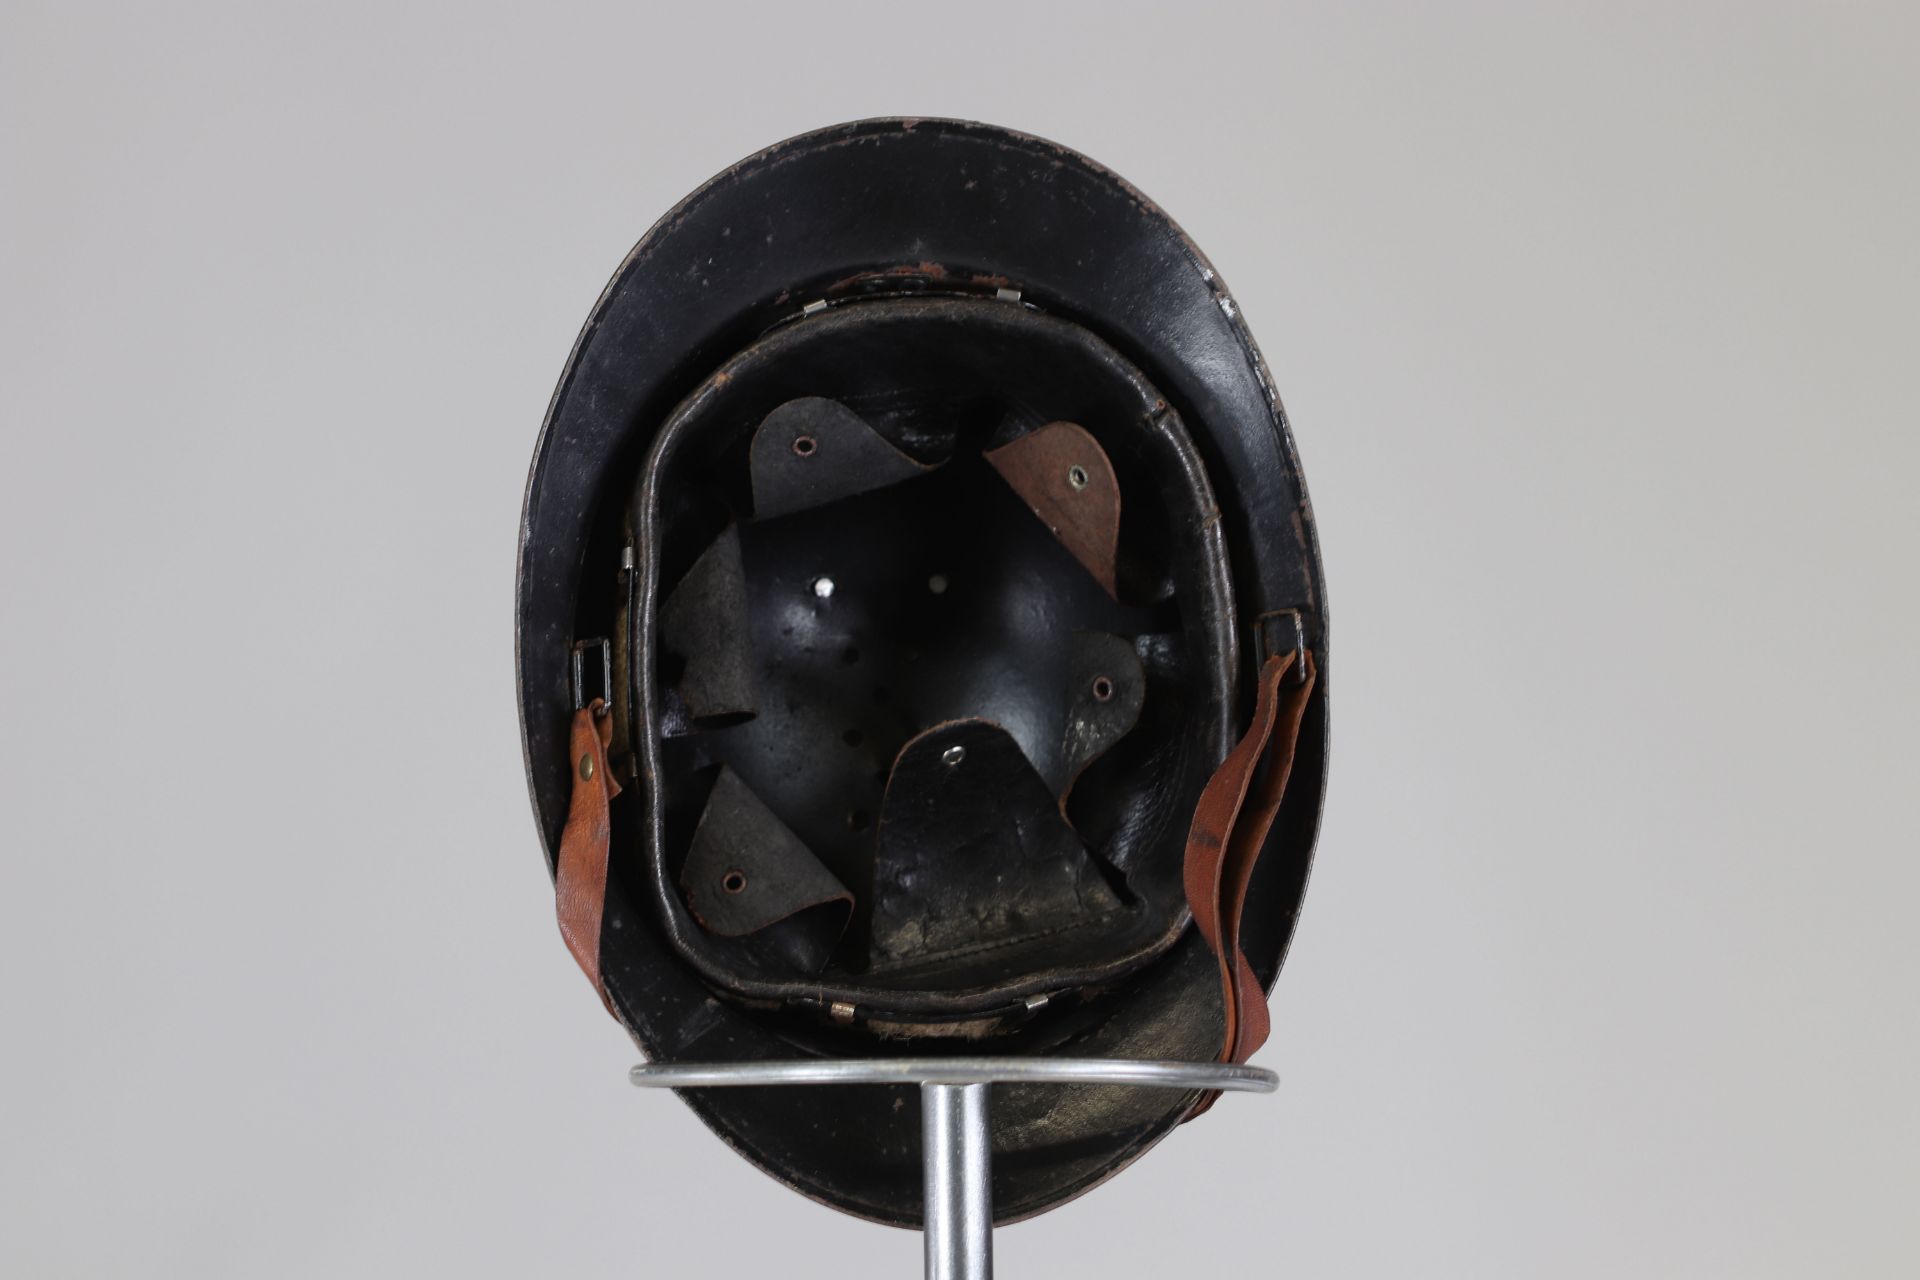 French WWII passive defense helmet - Bild 5 aus 5